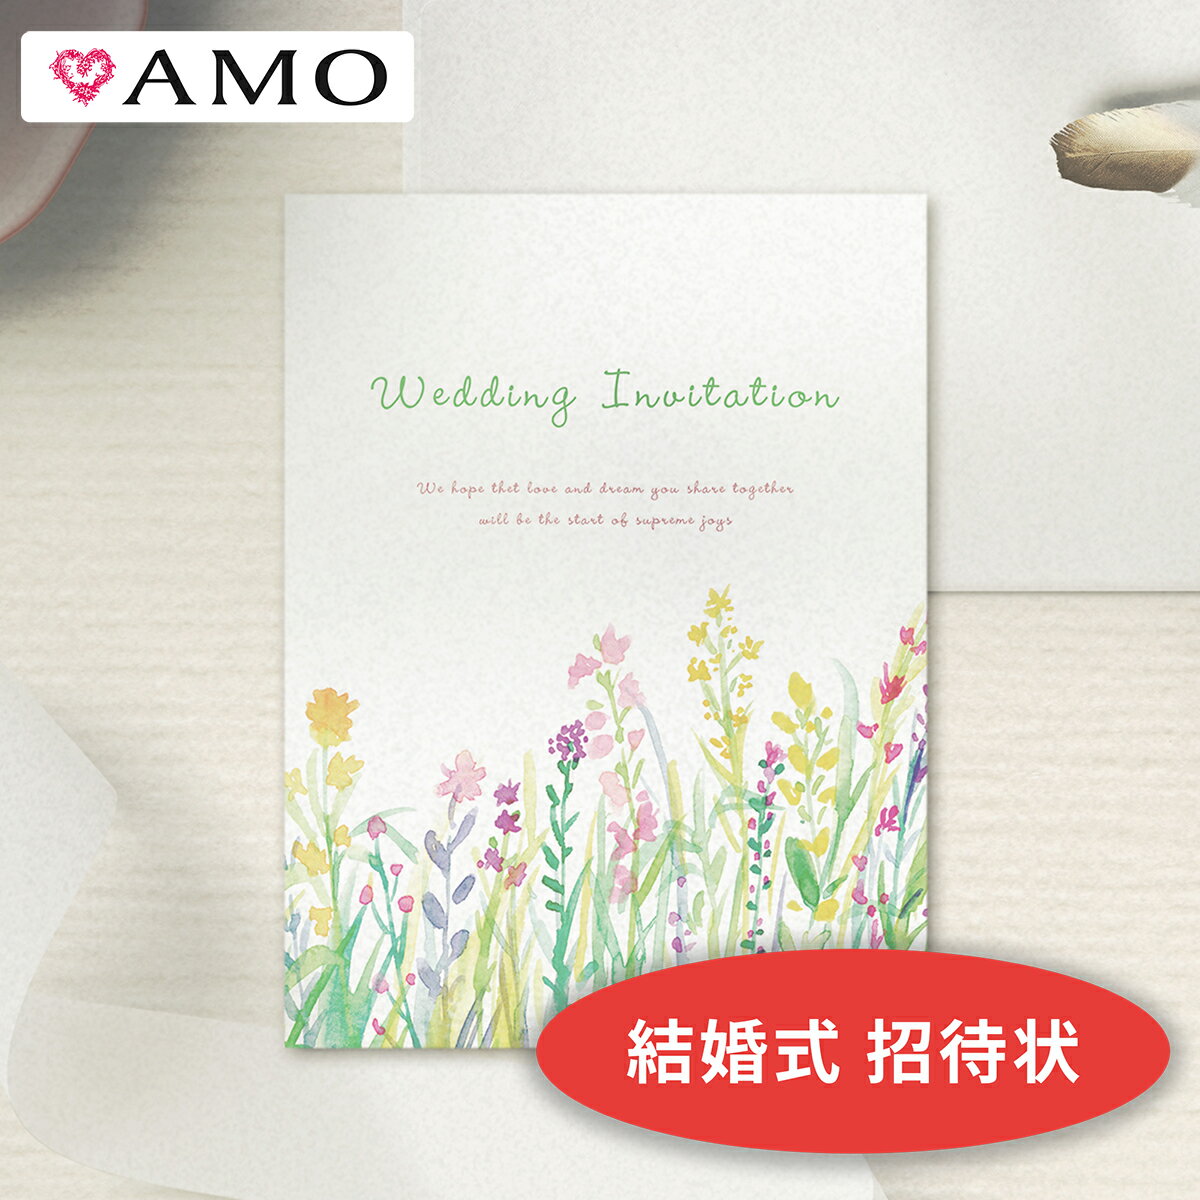 AMO 結婚式 招待状 手作りキット 花畑ホワイト (封筒 返信ハガキ付き) インクジェット対応 【30部までメール便可】